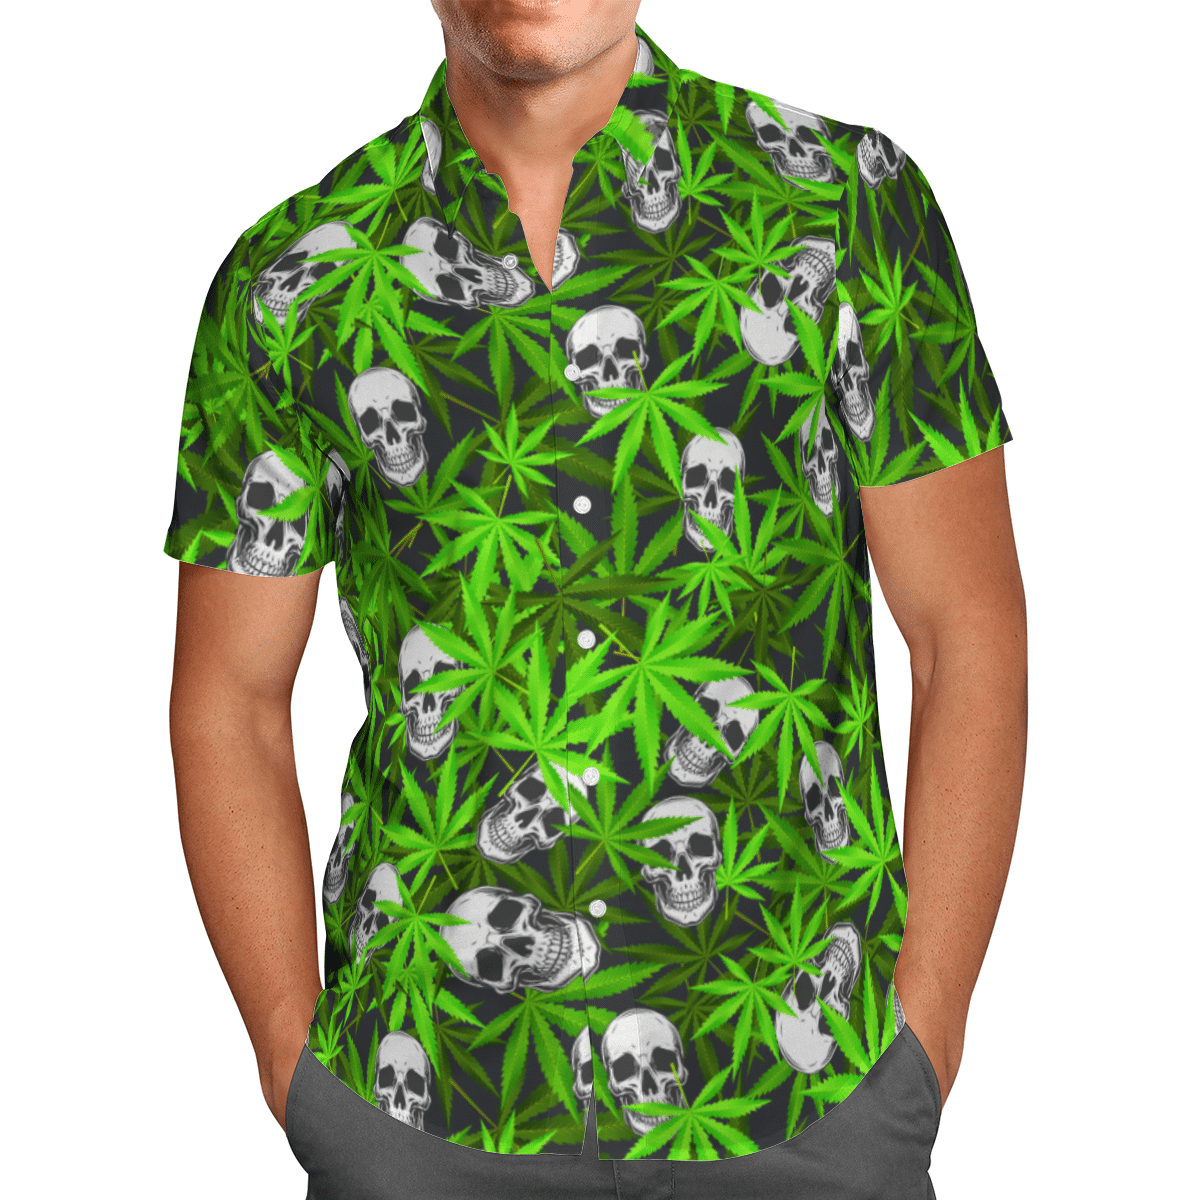 Skull Lover Hawaii Tshirt